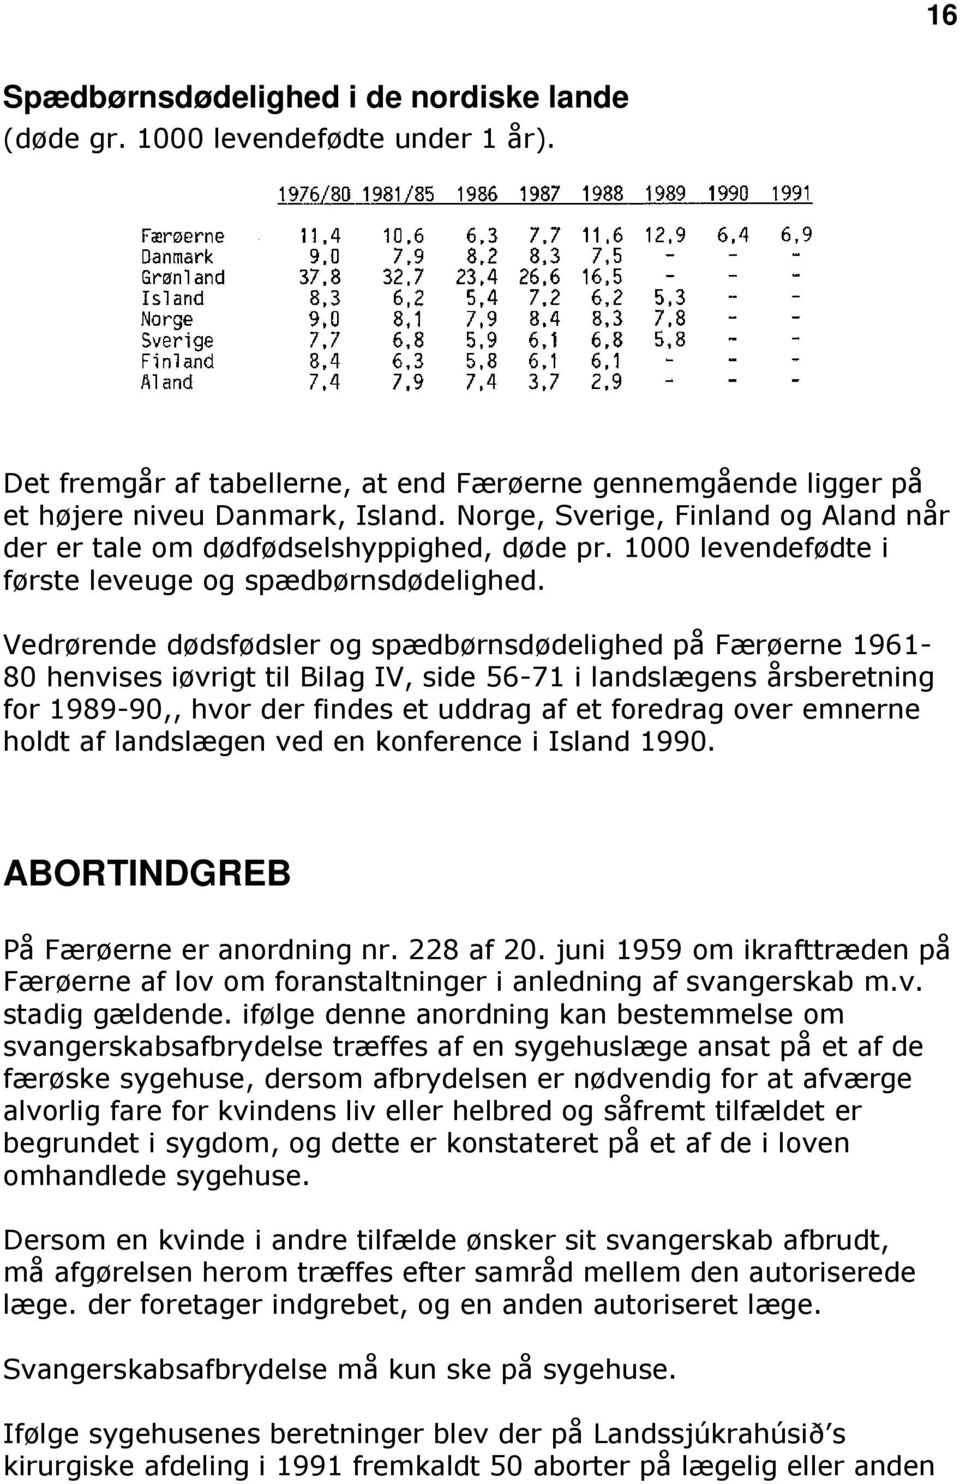 Vedrørende dødsfødsler og spædbørnsdødelighed på Færøerne 1961-80 henvises iøvrigt til Bilag IV, side 56-71 i landslægens årsberetning for 1989-90,, hvor der findes et uddrag af et foredrag over